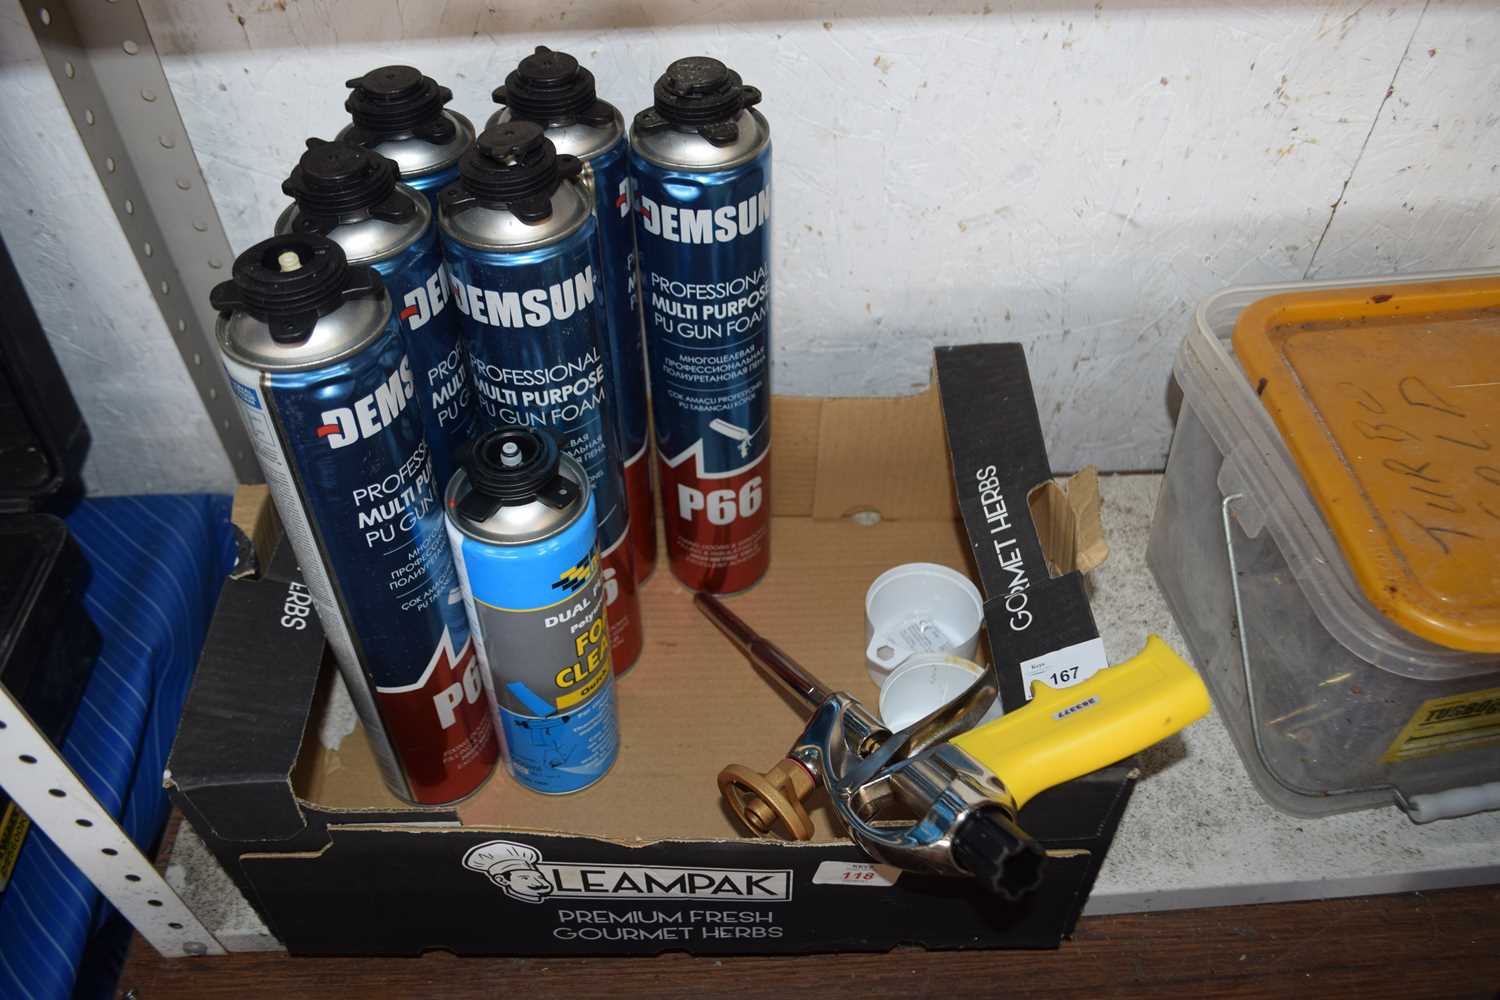 Box containing a multi-purpose PU foam gun with foam cartridges